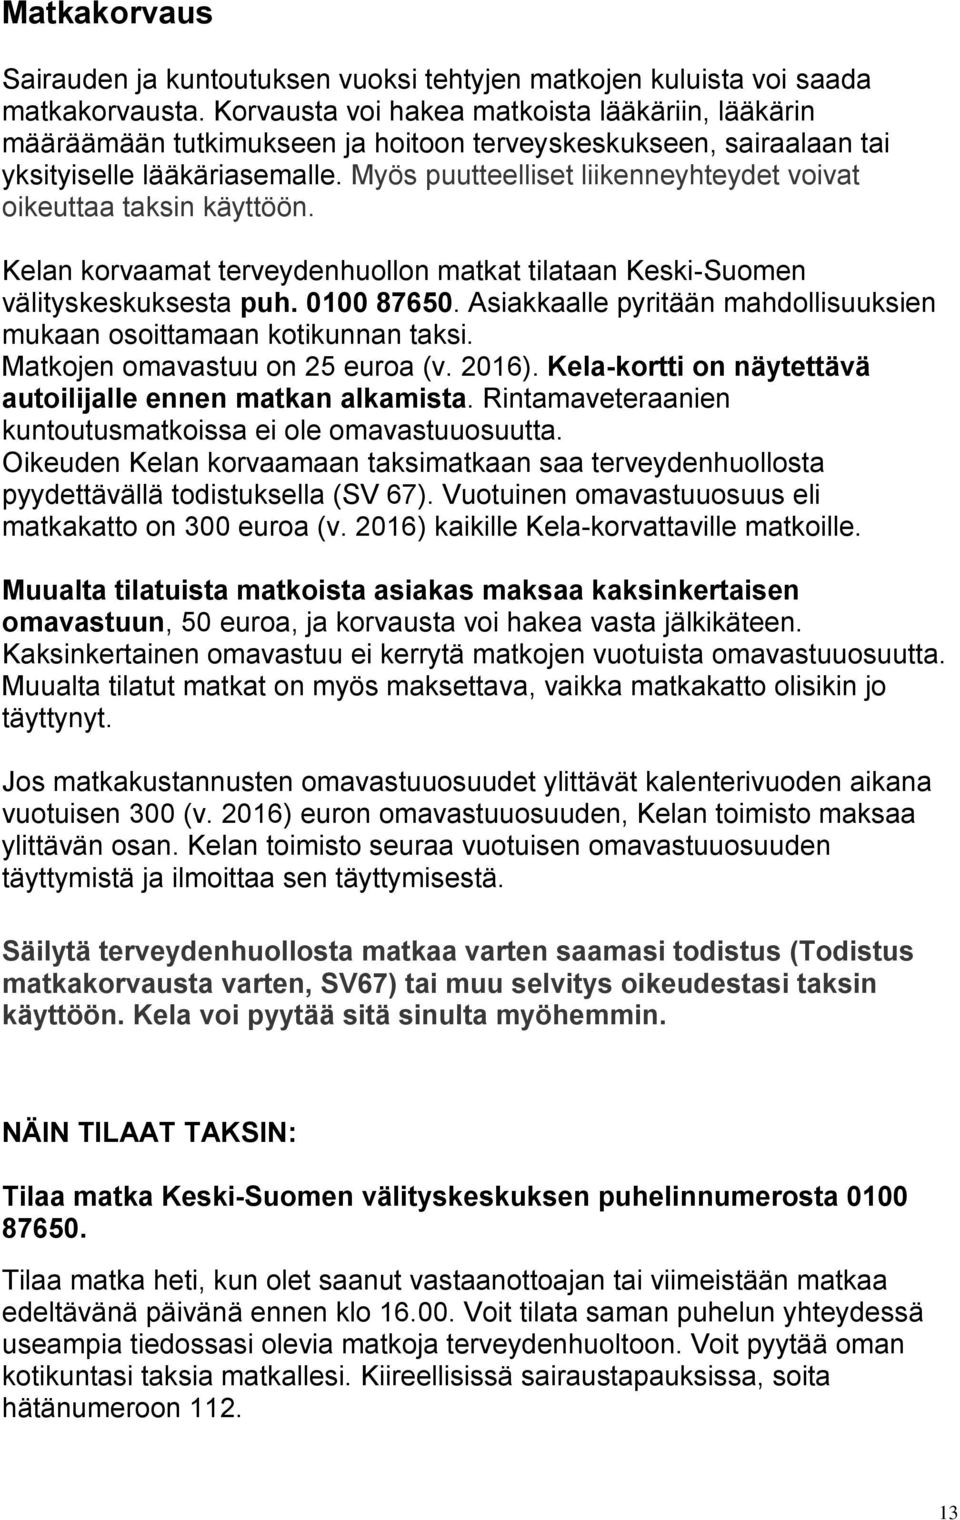 Myös puutteelliset liikenneyhteydet voivat oikeuttaa taksin käyttöön. Kelan korvaamat terveydenhuollon matkat tilataan Keski-Suomen välityskeskuksesta puh. 0100 87650.